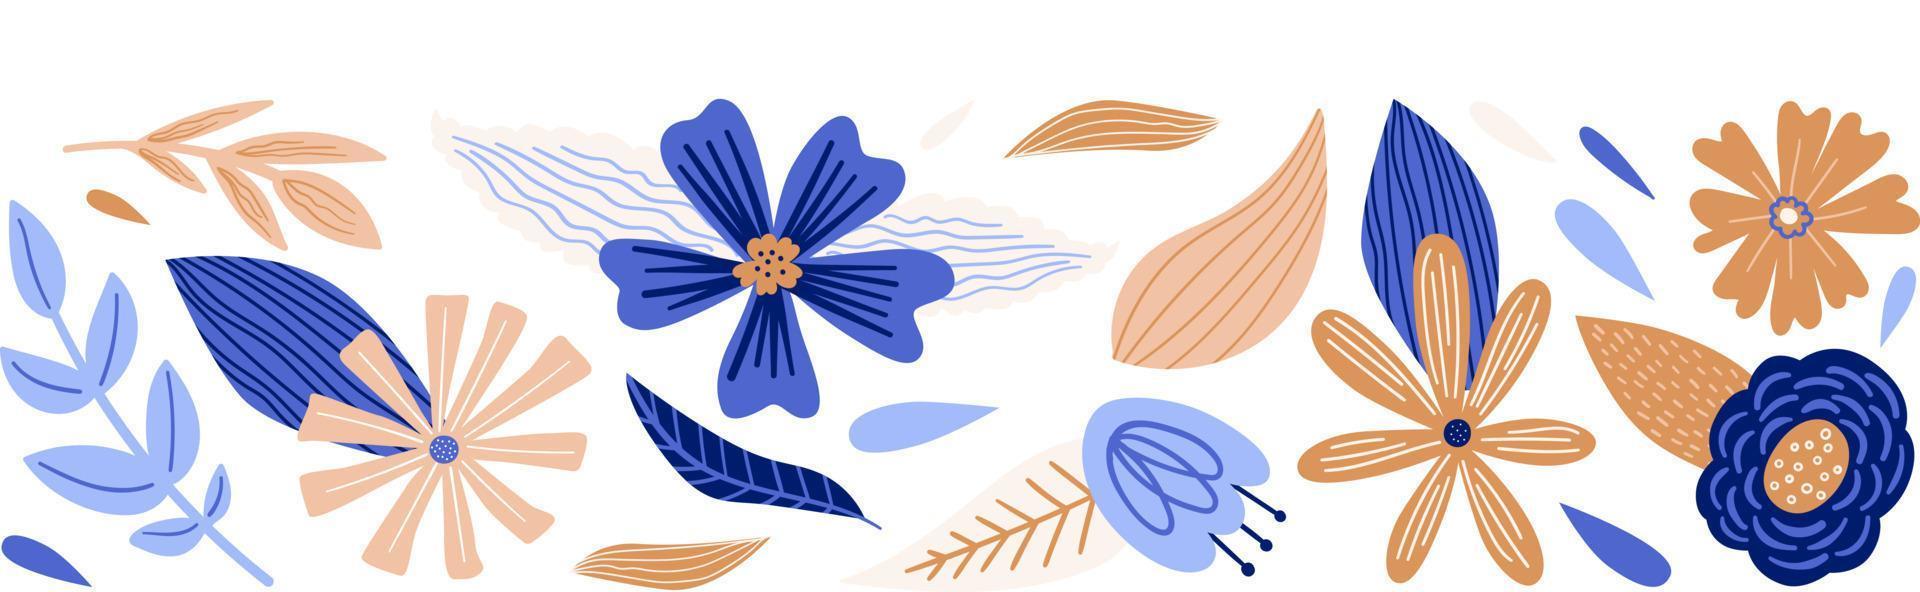 borde floral de dibujos animados con flores, hojas, plantas vector